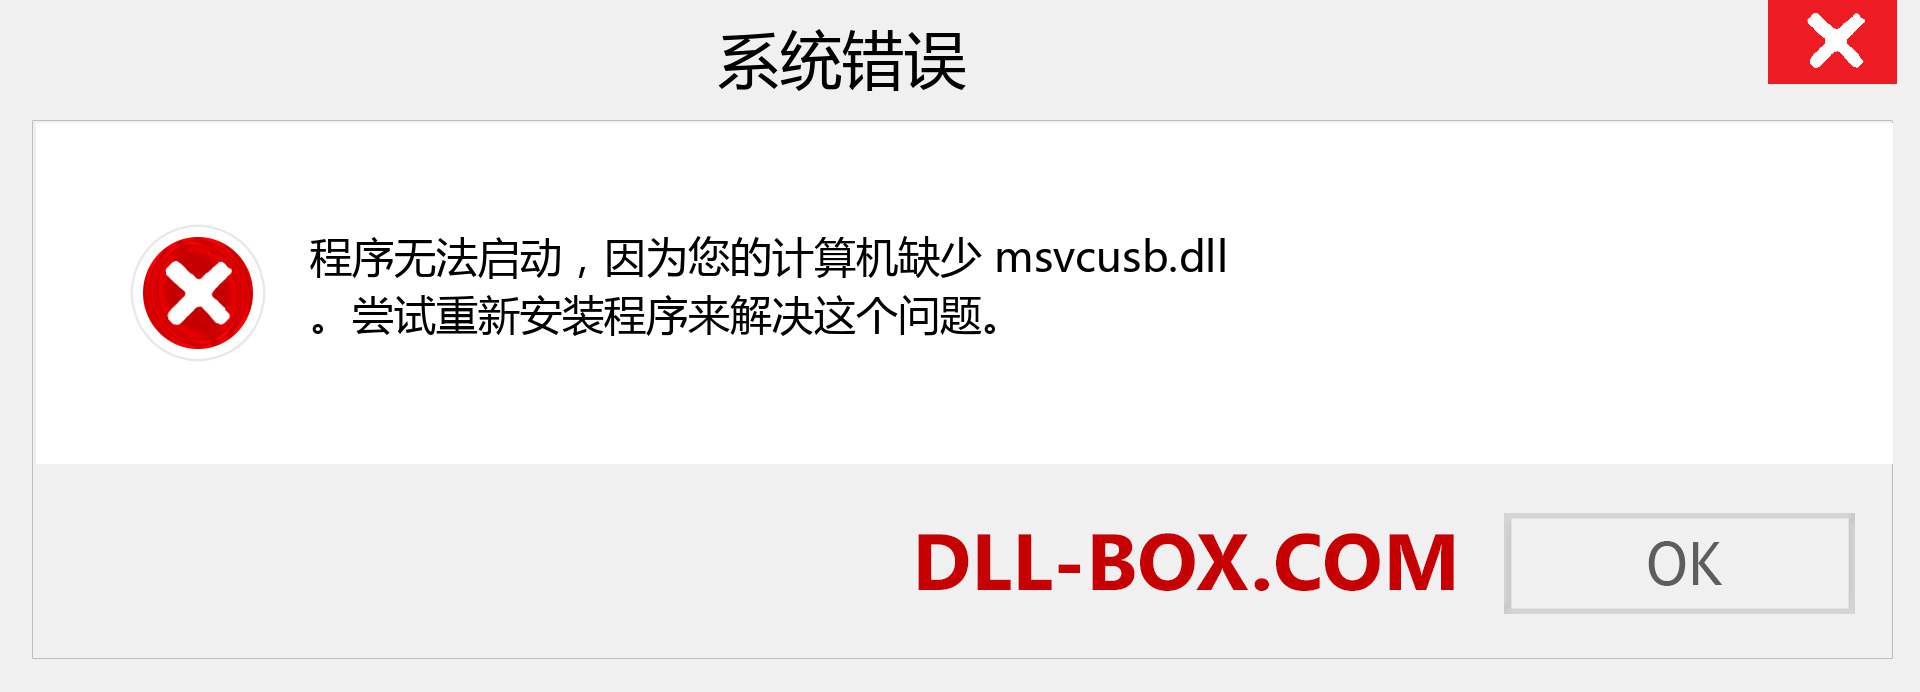 msvcusb.dll 文件丢失？。 适用于 Windows 7、8、10 的下载 - 修复 Windows、照片、图像上的 msvcusb dll 丢失错误